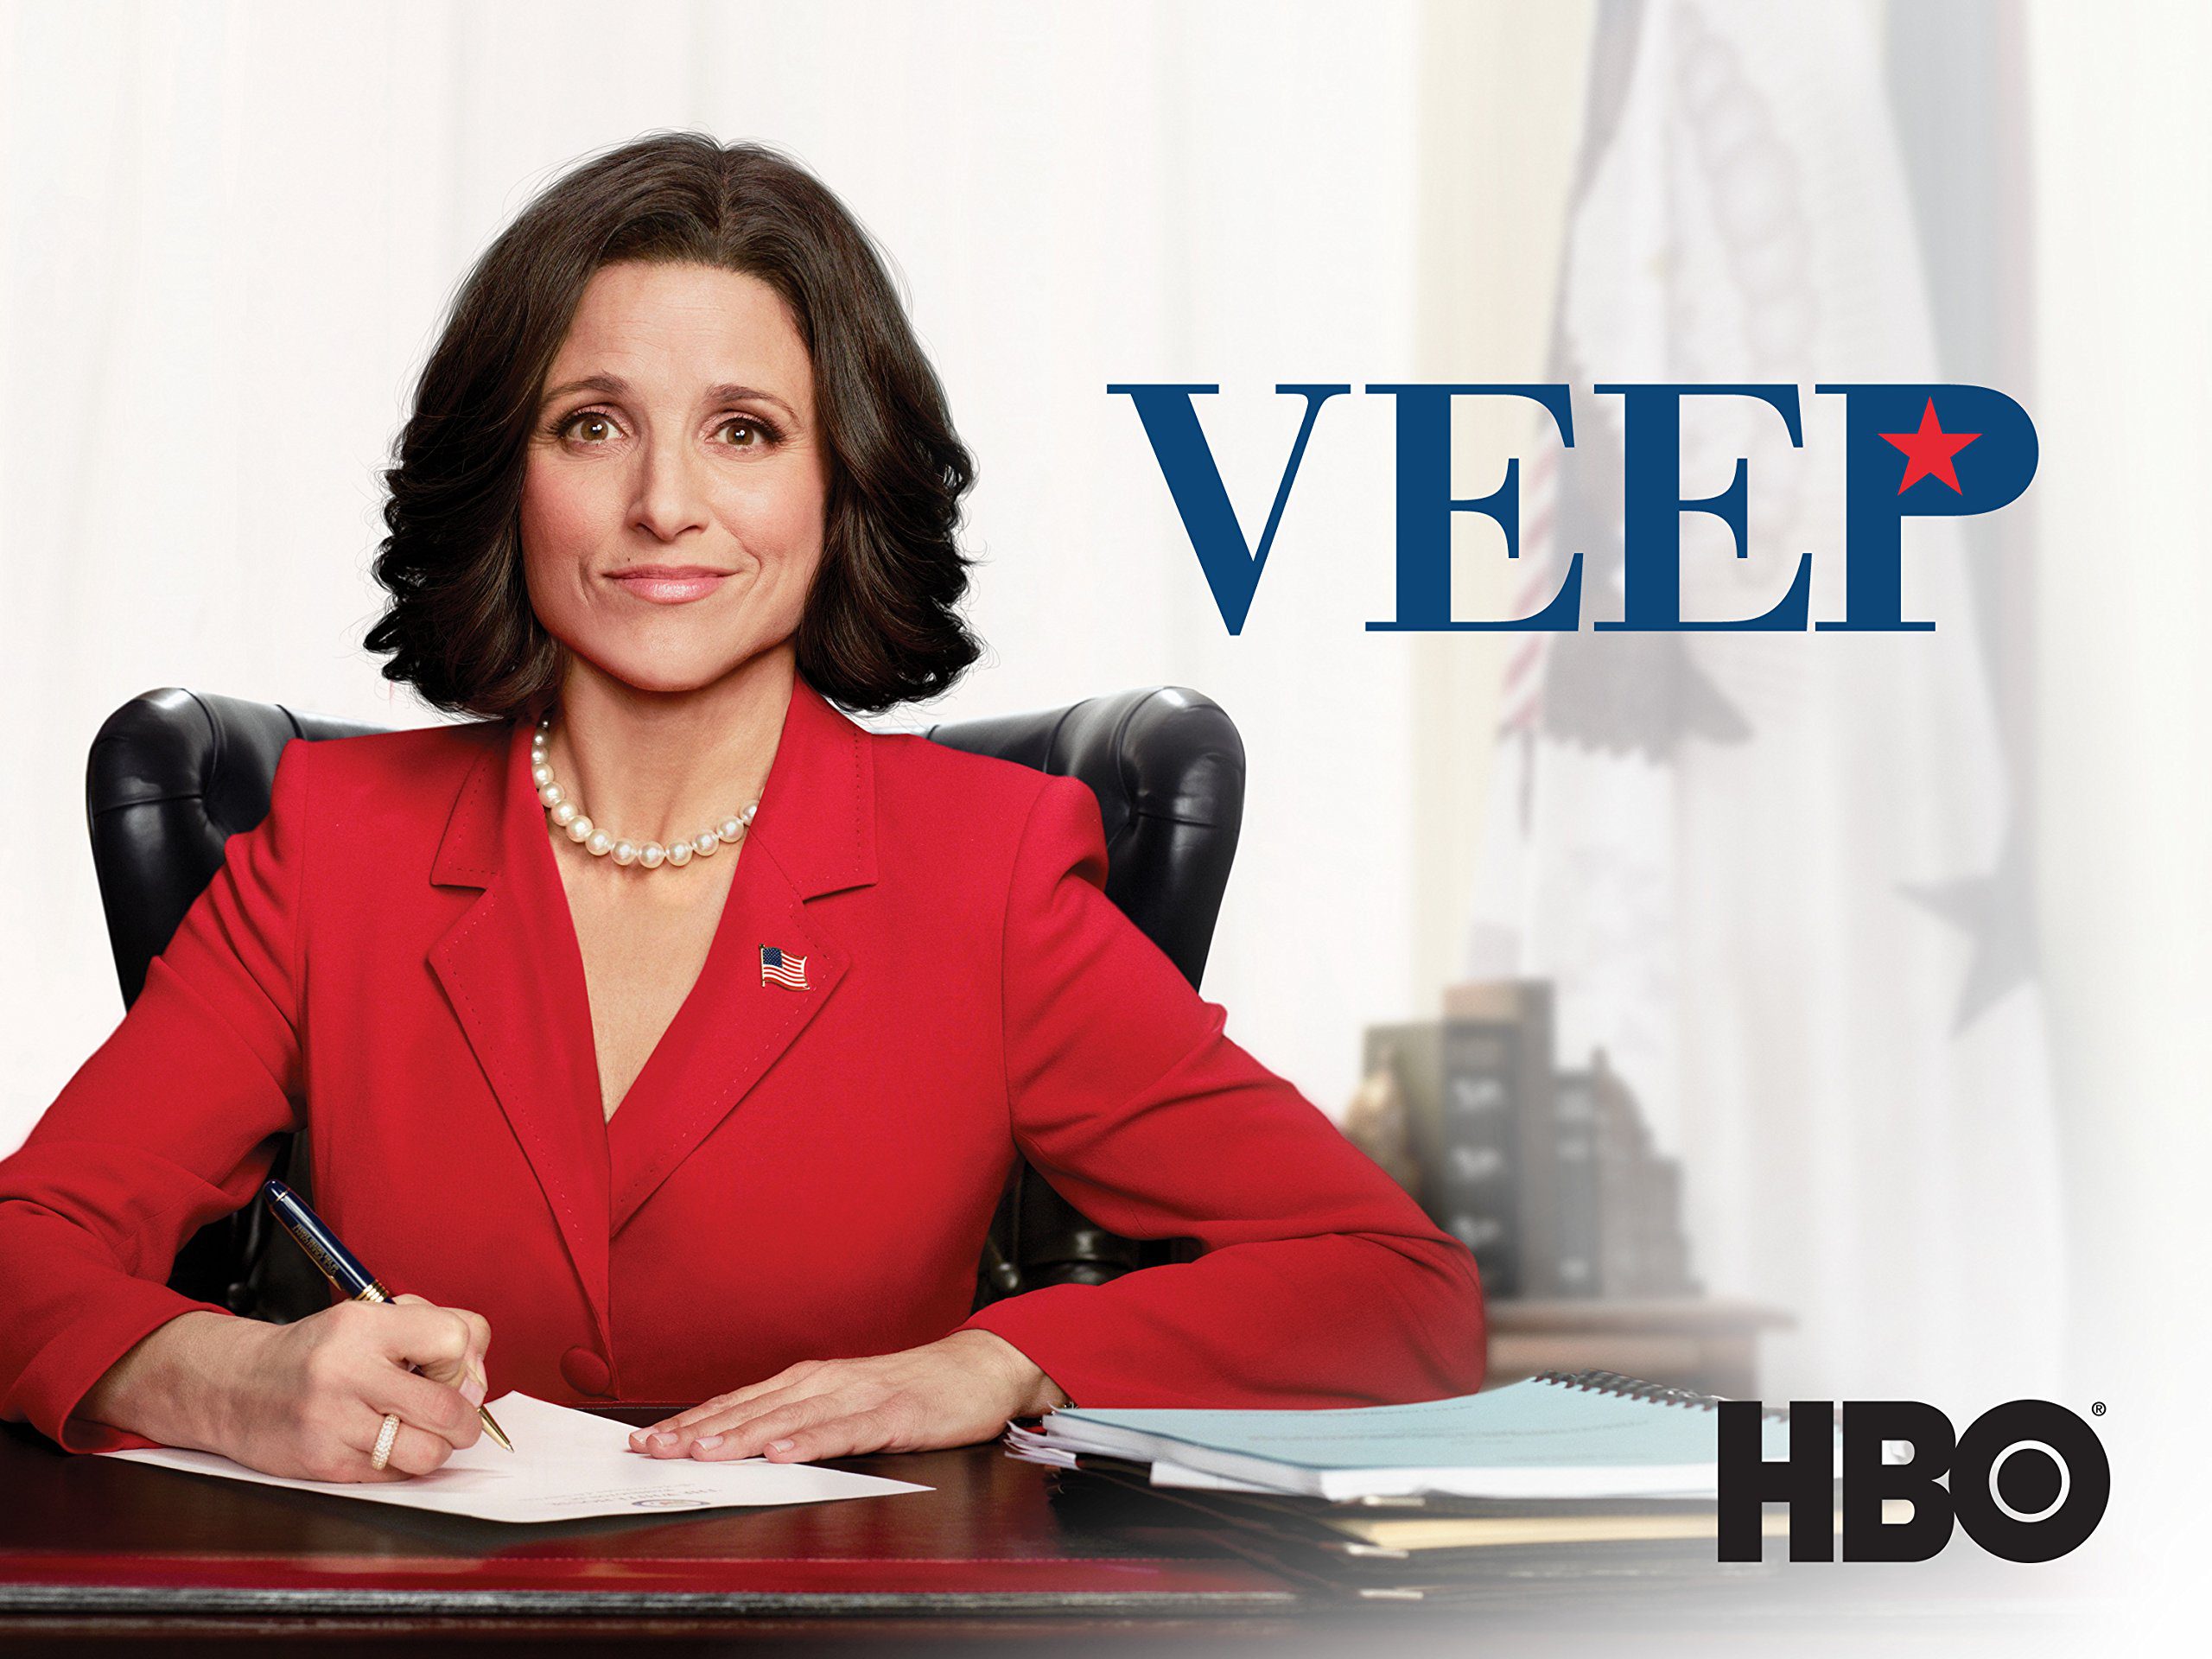 Veep- HBO